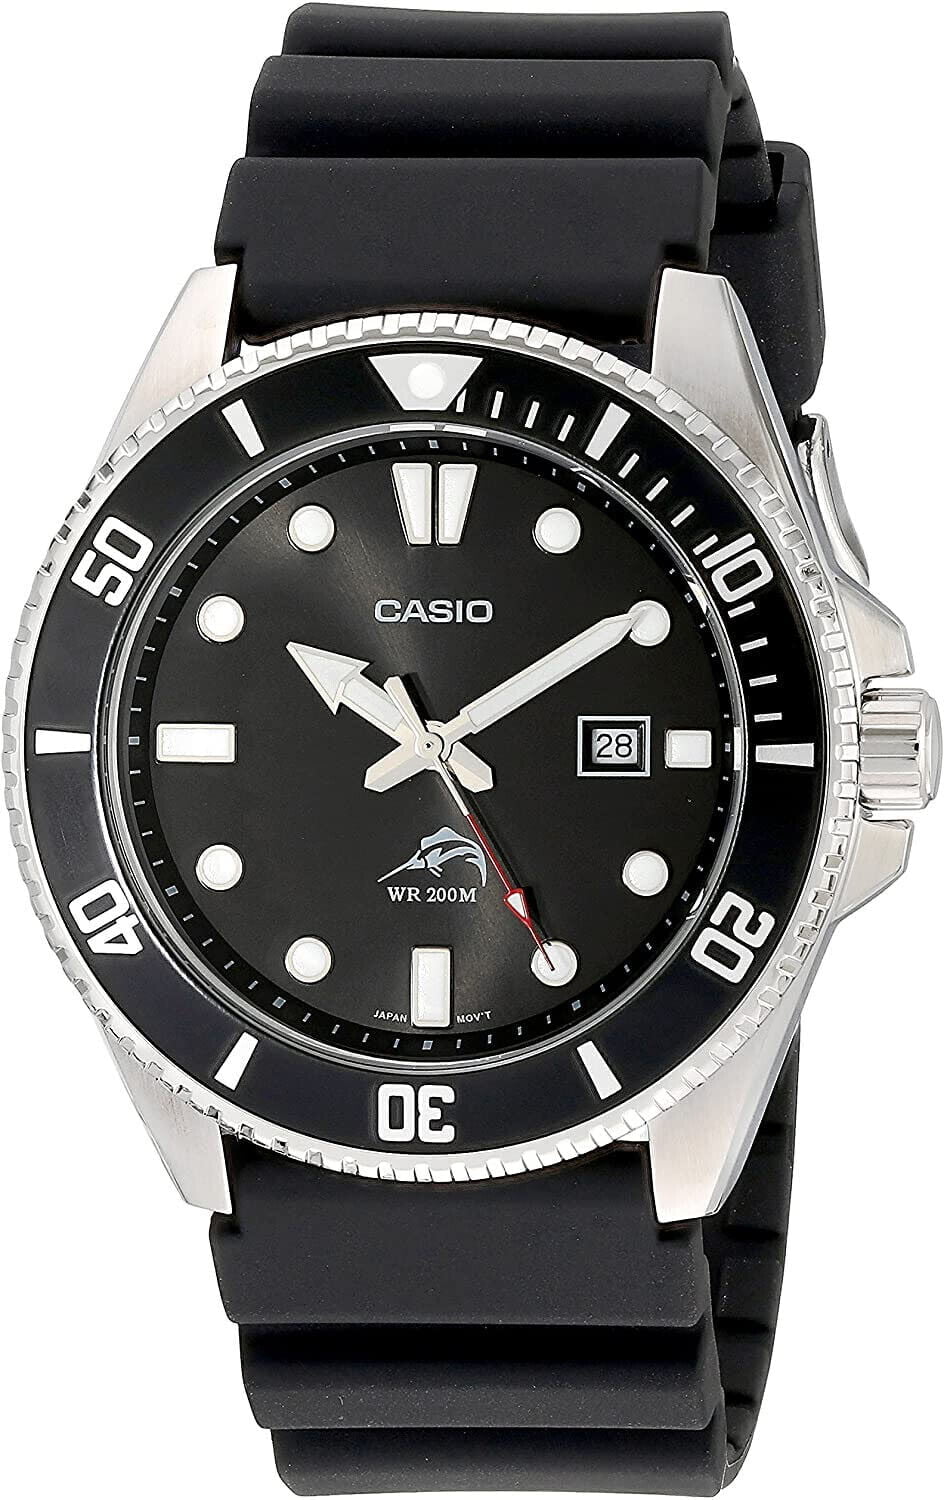 Casio MDV106 “Duro” Diving Wristwatch